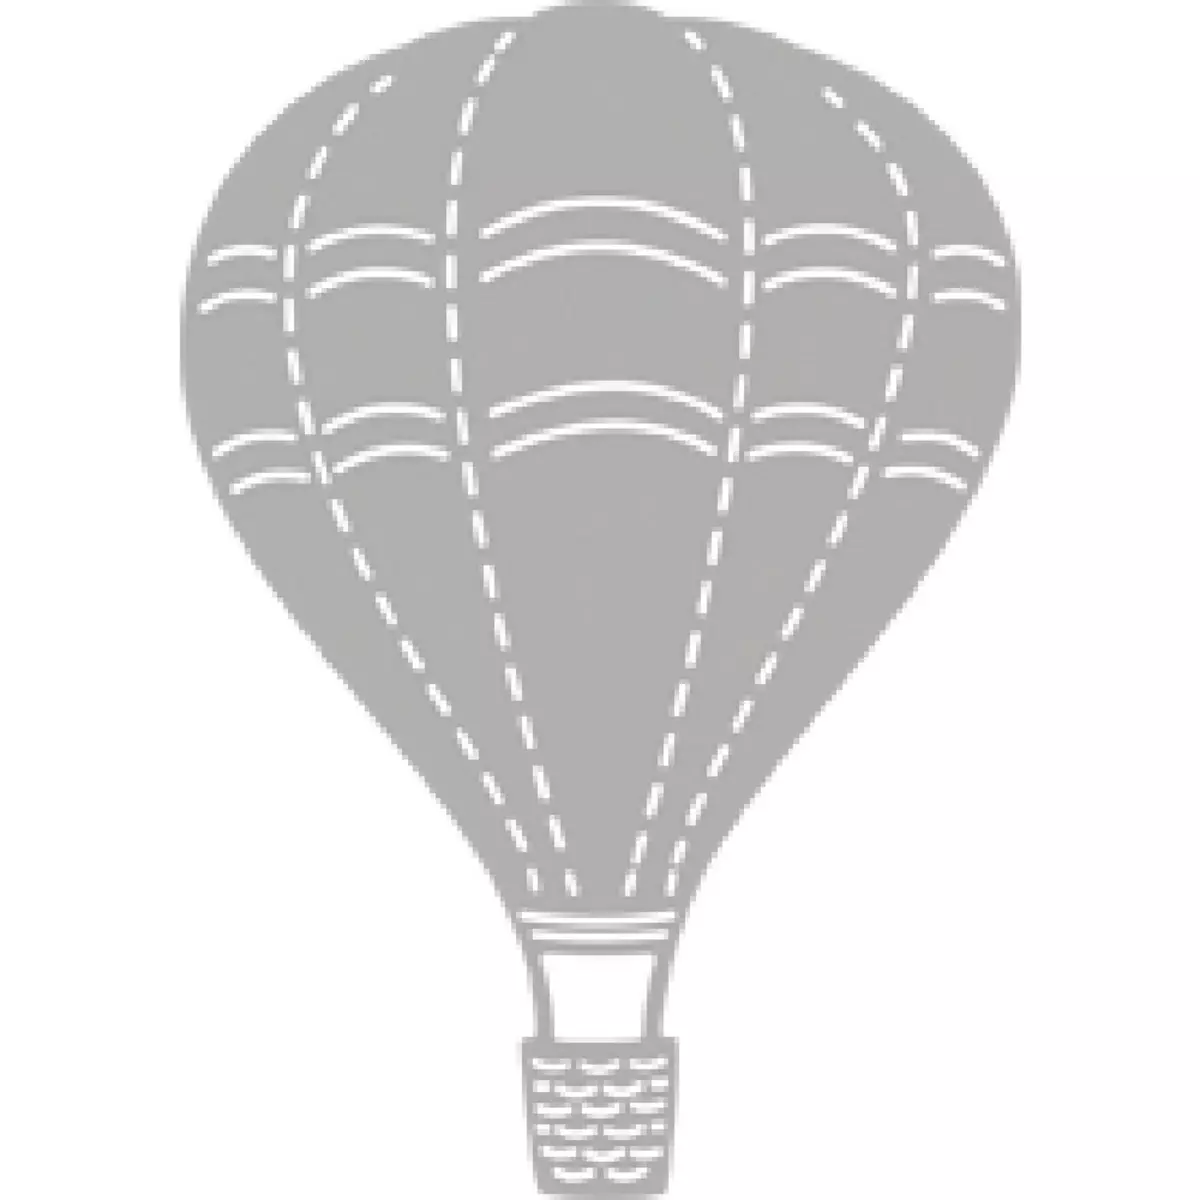 Rayher Pochoir à estamper: Hot Air Balloon, 5,5x7,8cm, 1 pce.